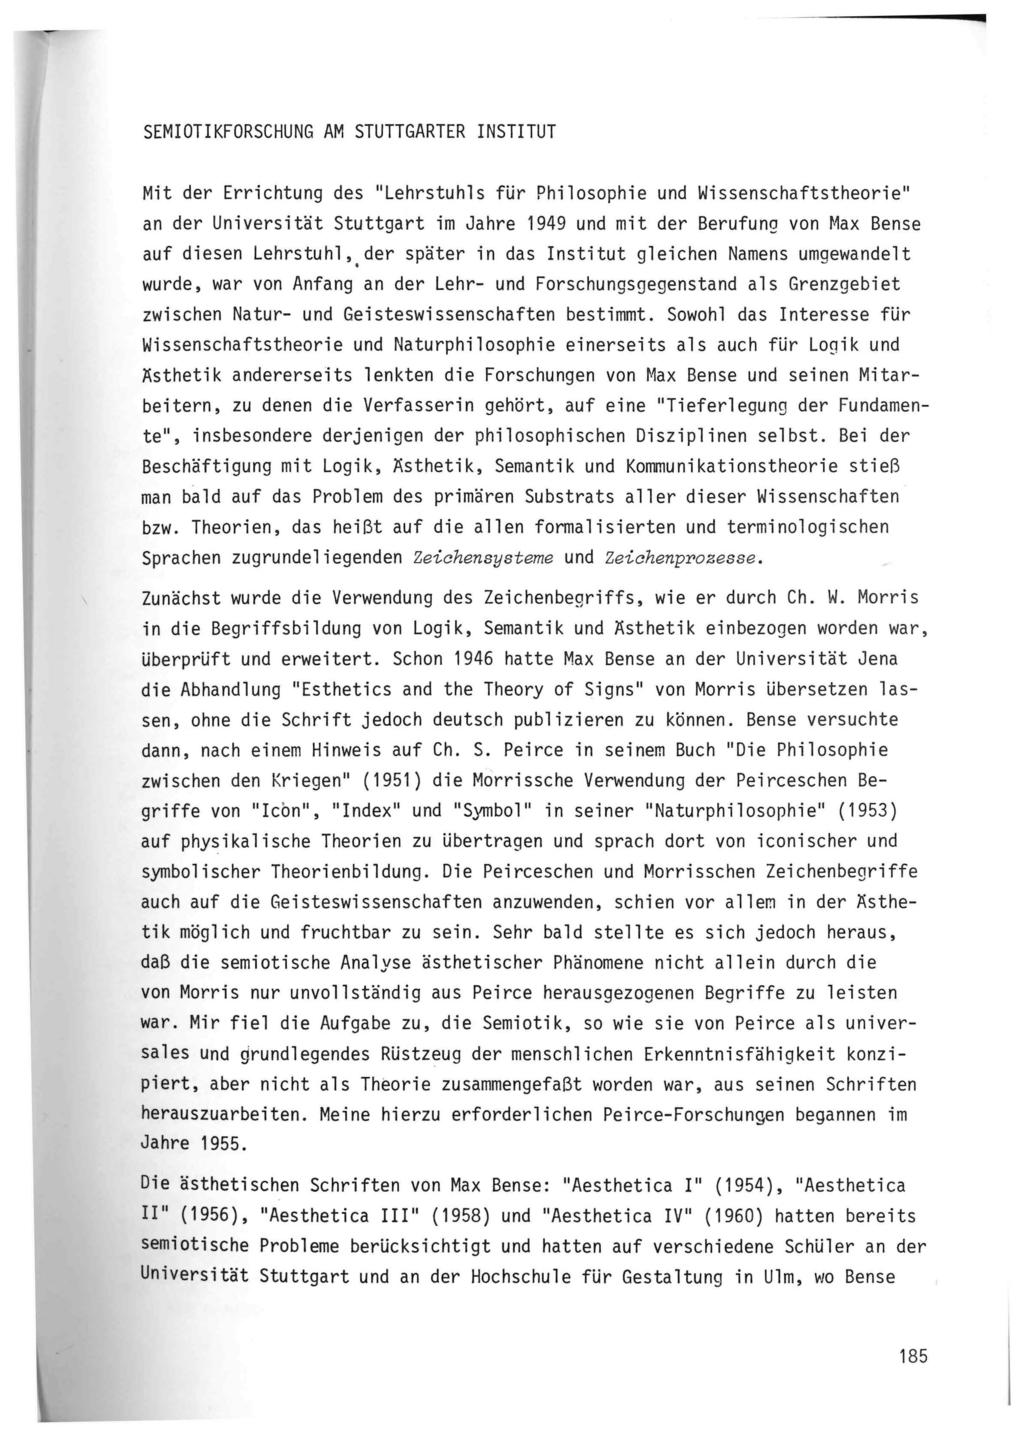 SEMIOTIKFORSCHUNG AM STUTTGARTER INSTITUT Mit der Errichtung des "Lehrstuhls für Philosophie und Wissenschaftstheorie" an der Universität Stuttgart im Jahre 1949 und mit der Berufung von Max Bense